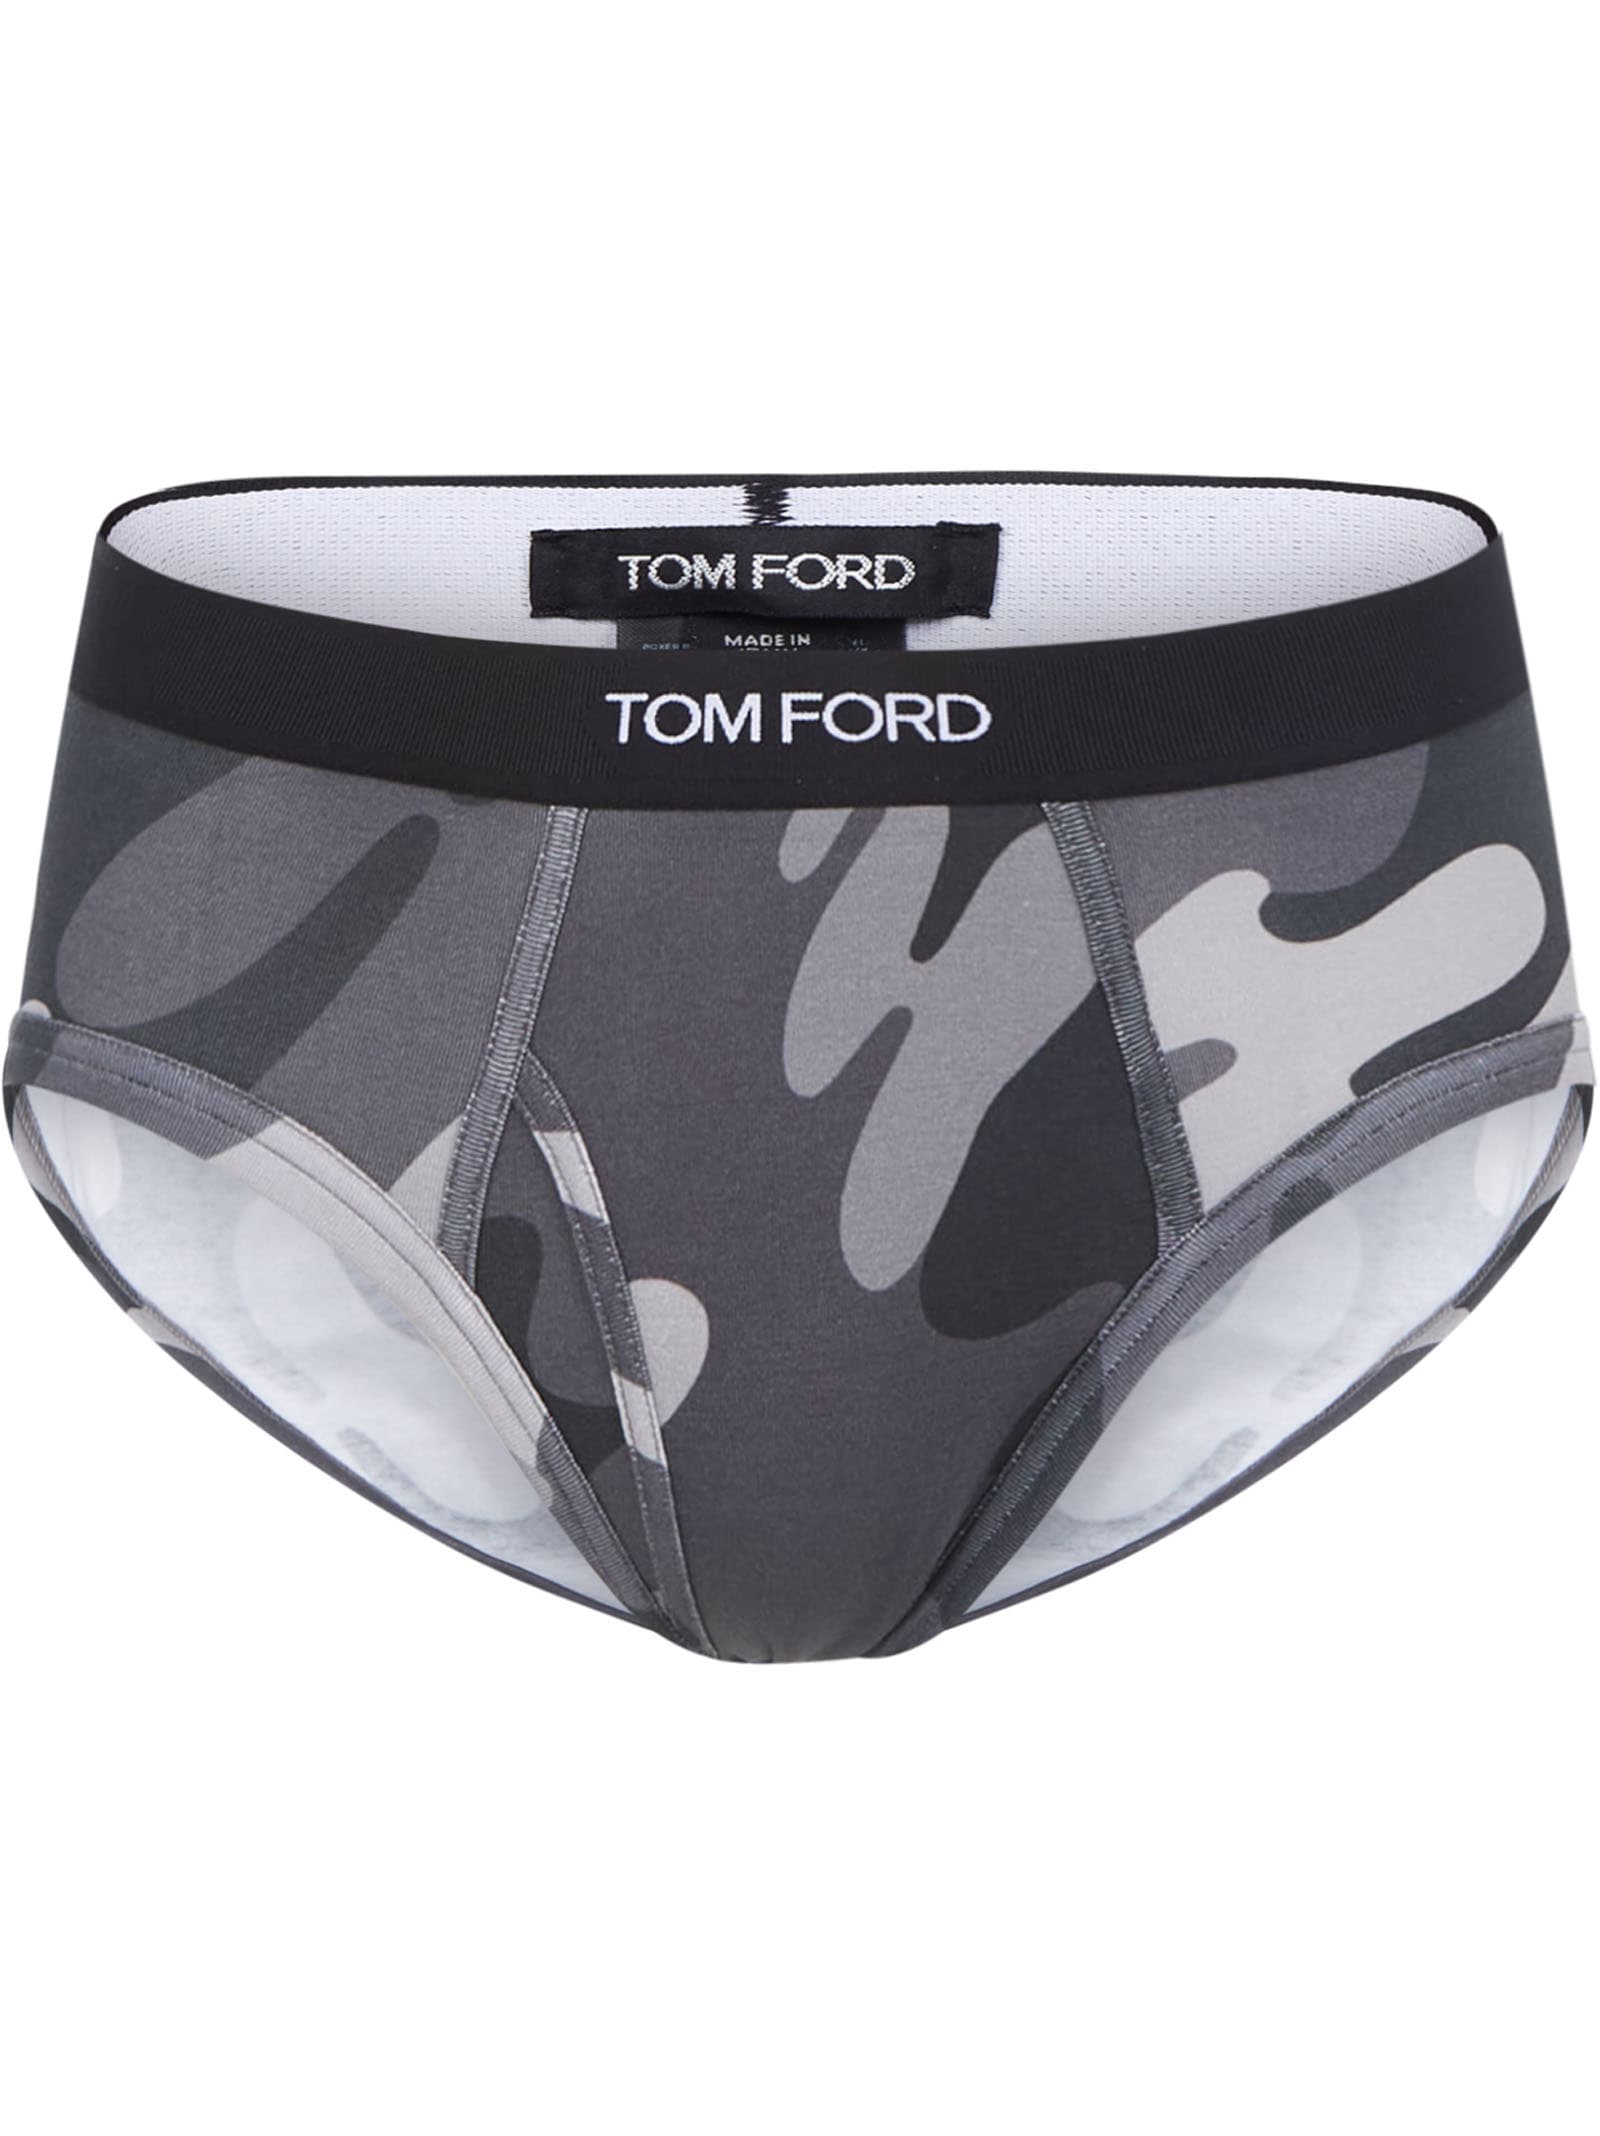 Tom Ford Briefs In Grey